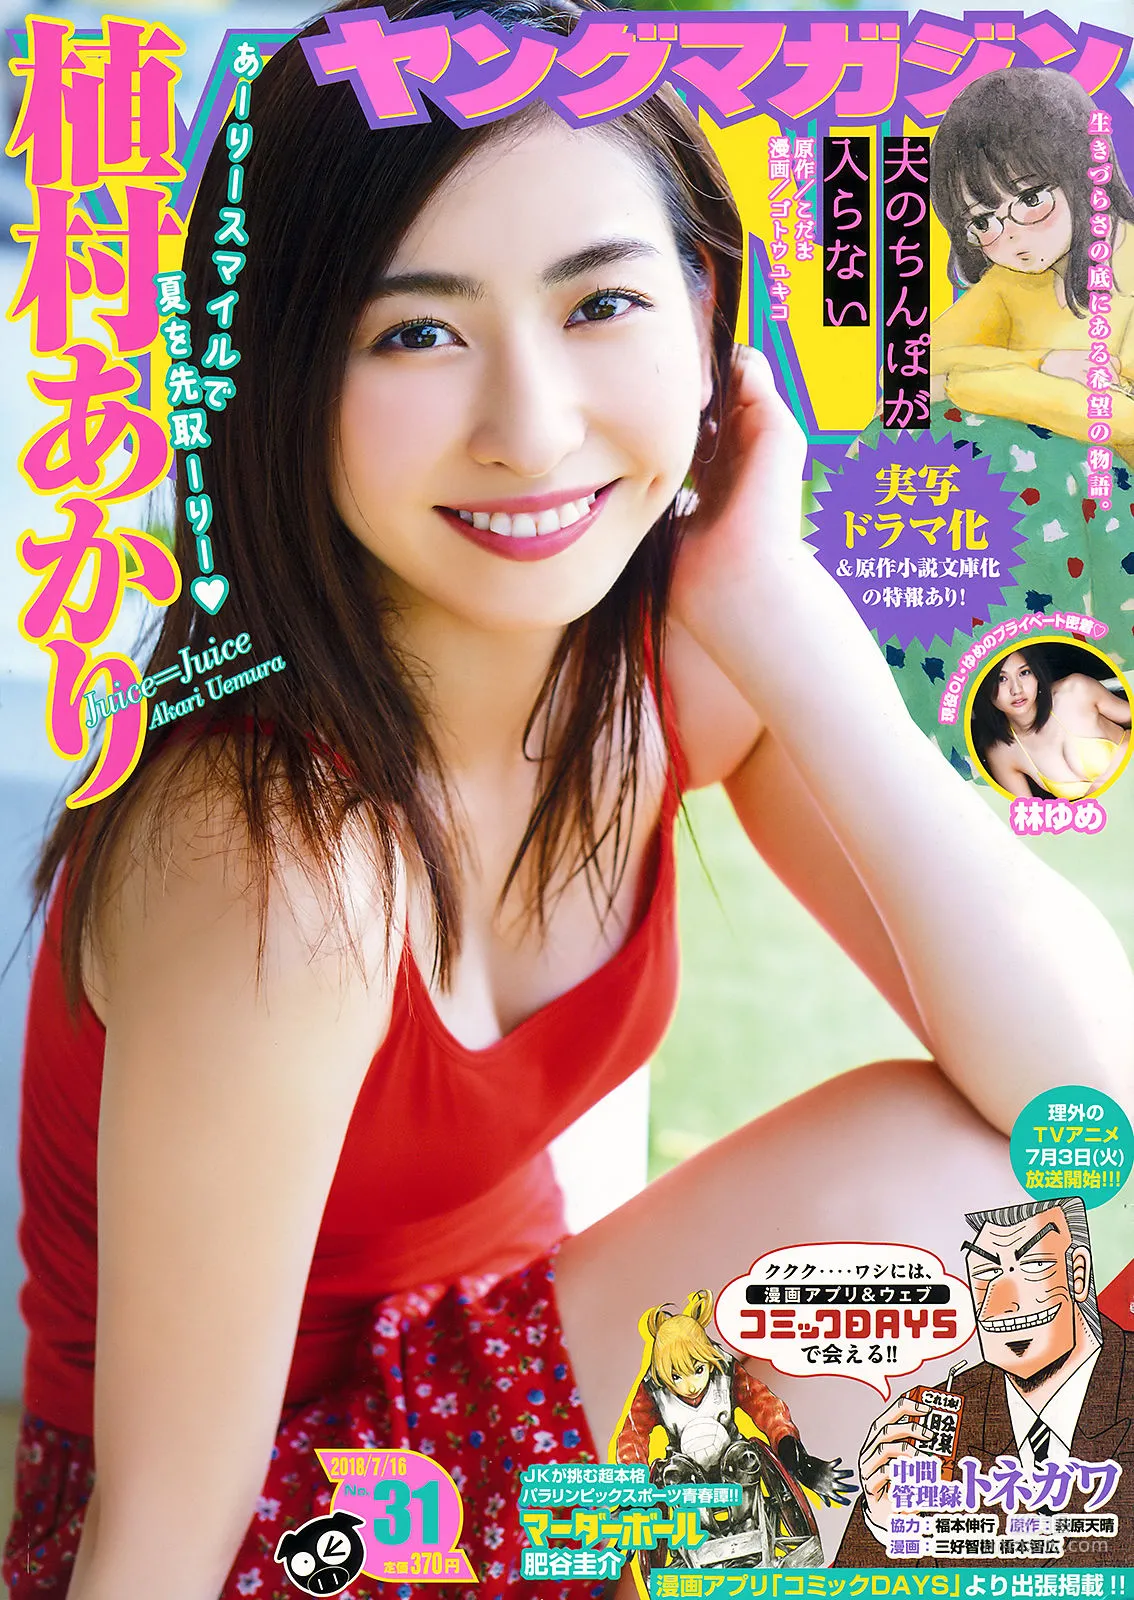 [Young Magazine] 植村あかり 林ゆめ 2018年No.31 写真杂志1